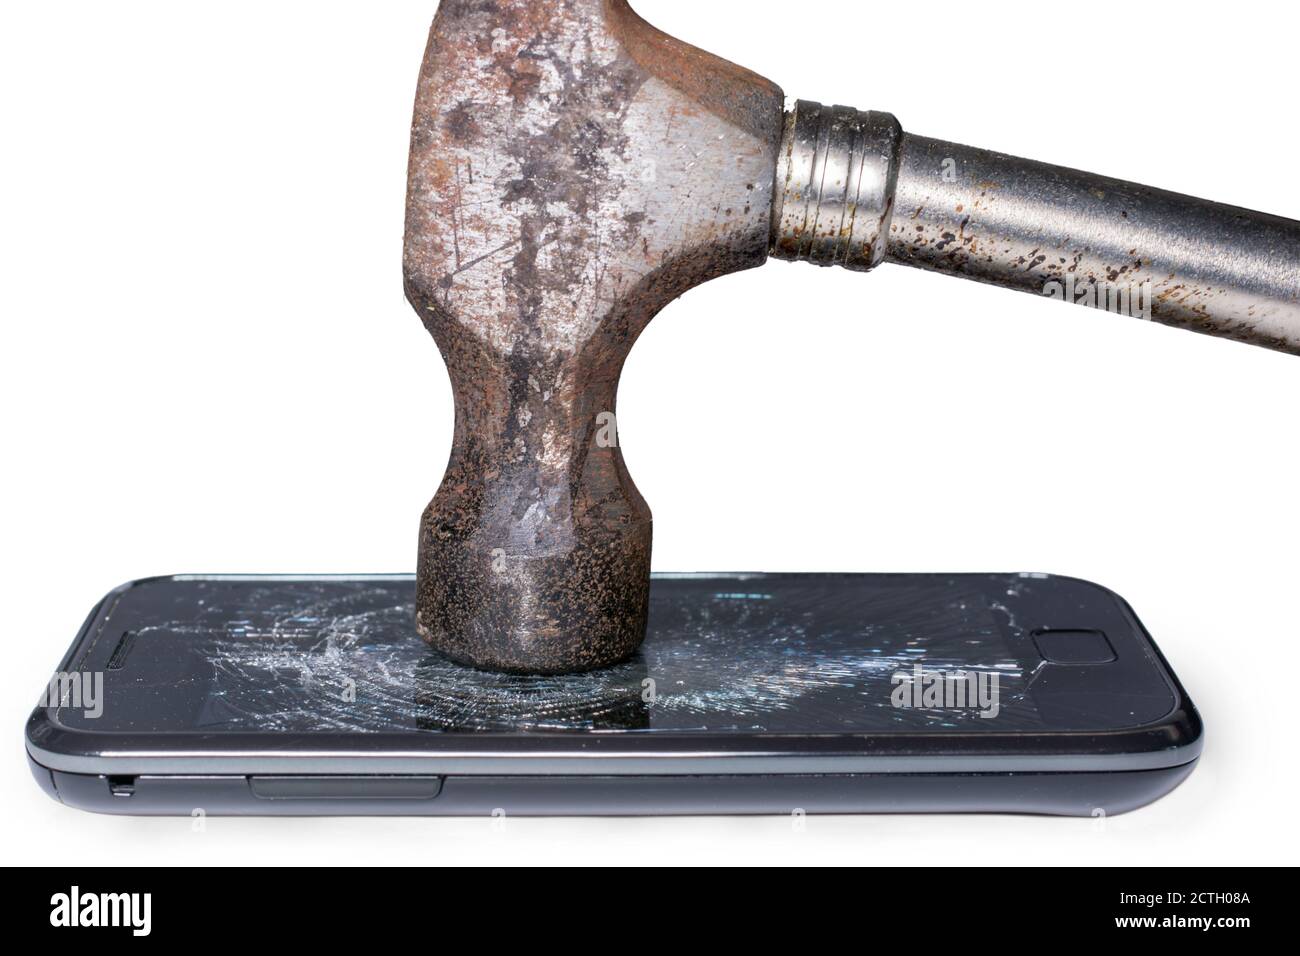 Hammer schlägt auf Display des Smartphones vor Weiß Hintergrund Stockfoto